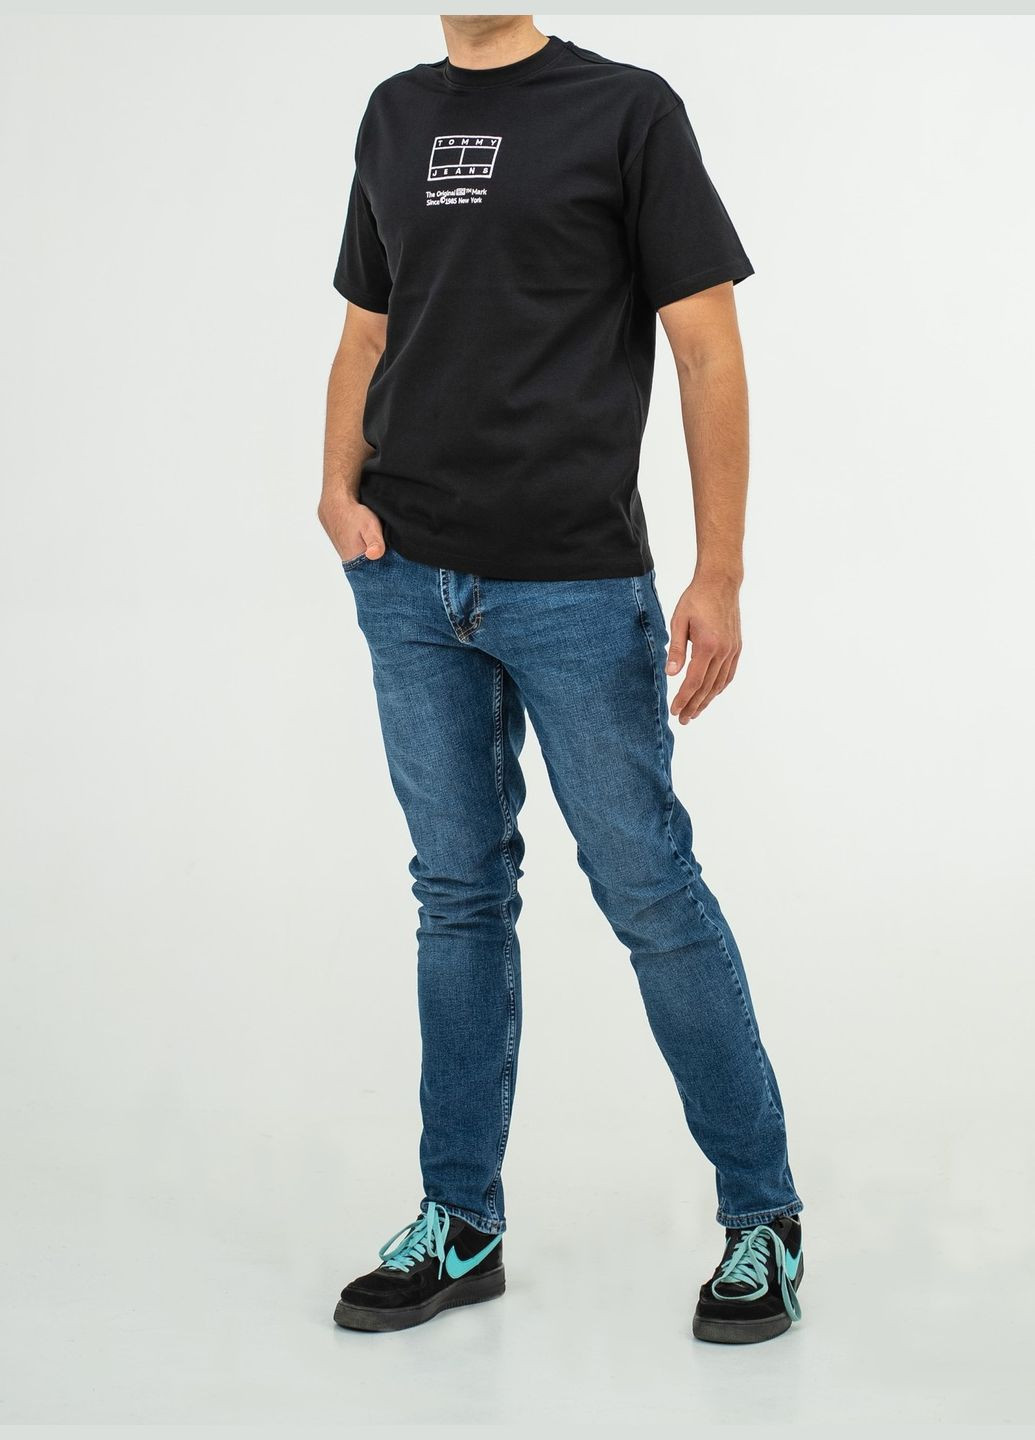 Черная футболка мужская th-3111 Tommy Hilfiger New York